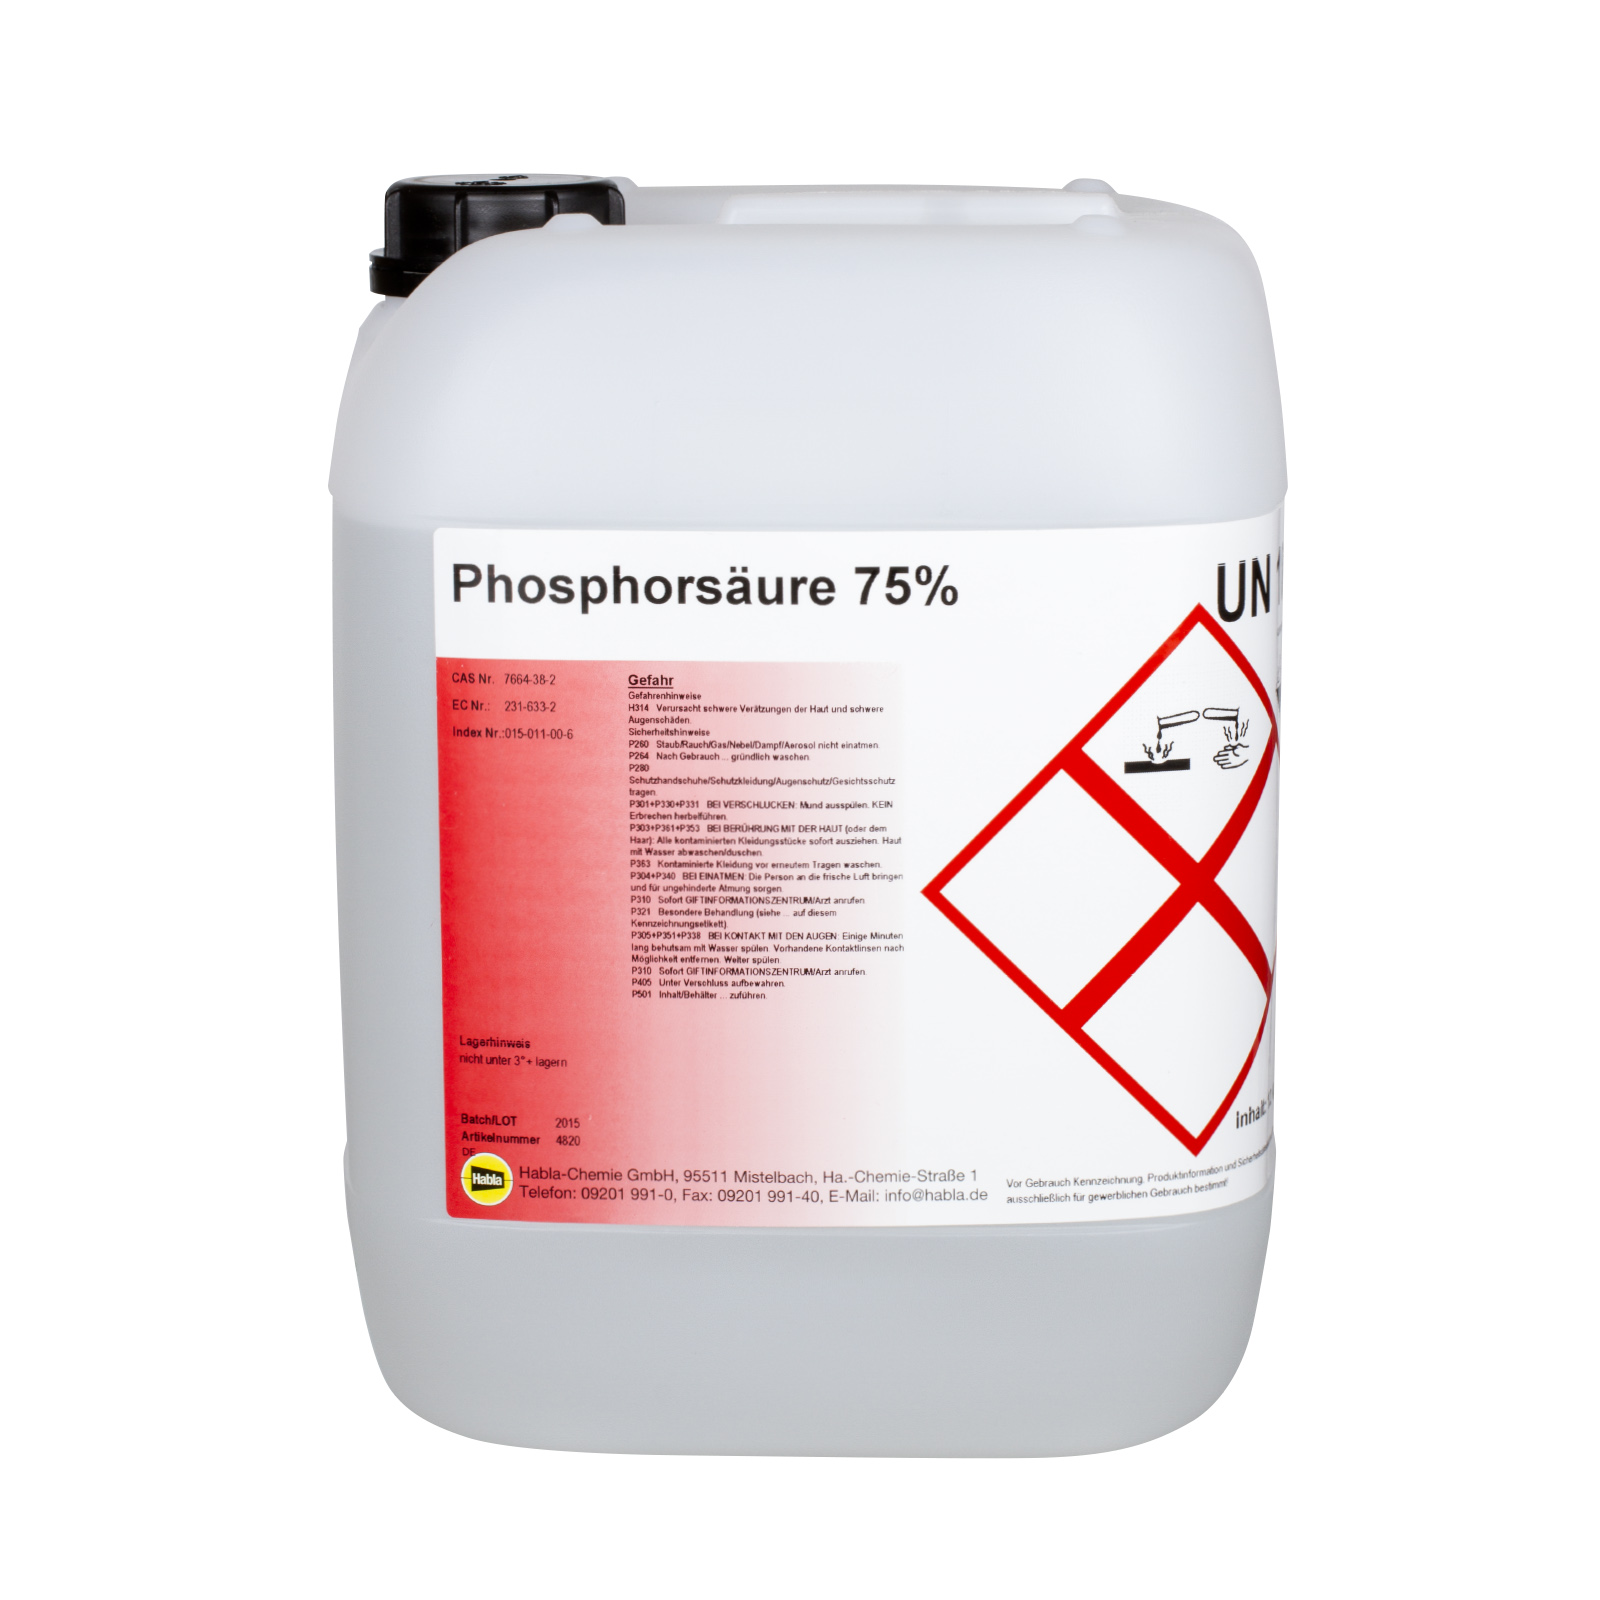 Phosphorsäure 75% 12 Kg